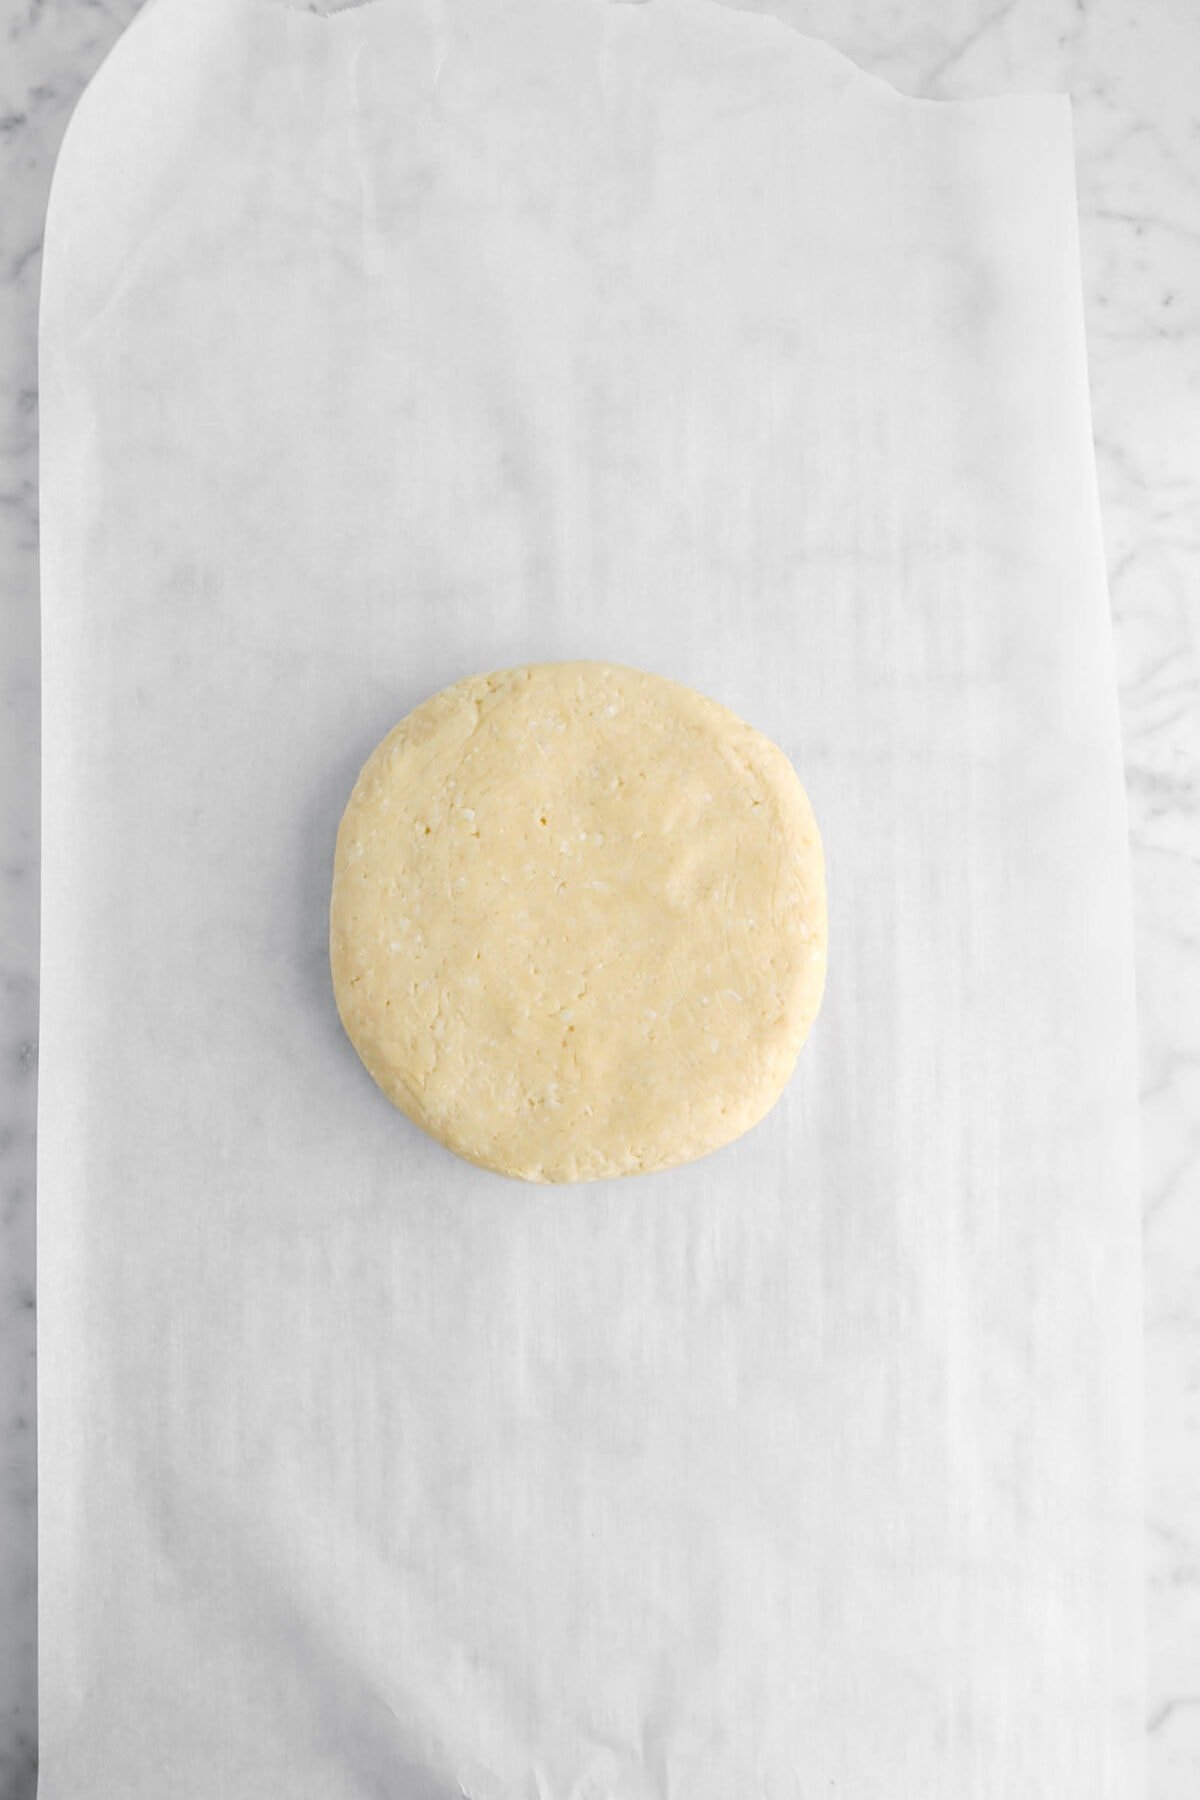 cookie dough on parchment paper.